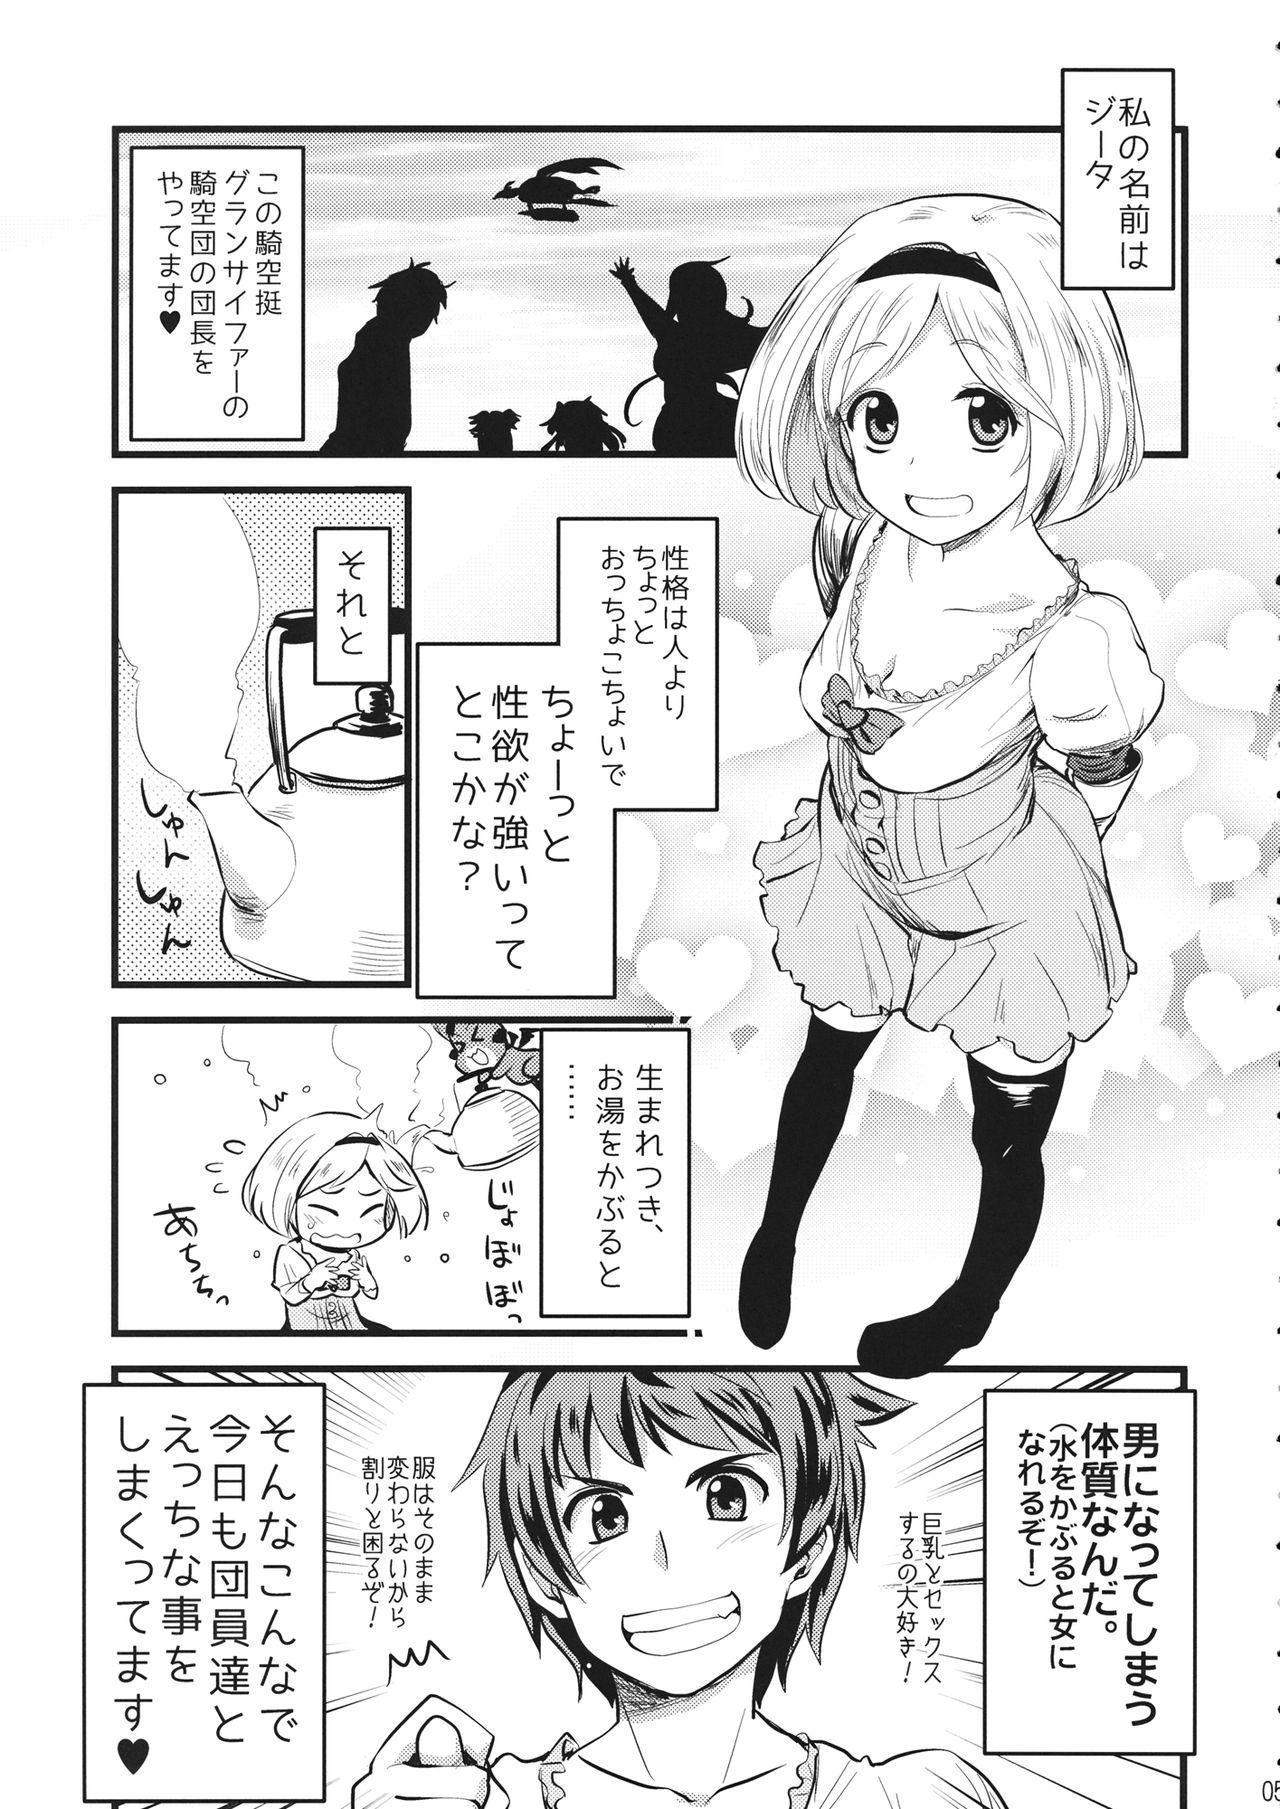 Doggy Style Porn Mizu o Kaburu to Onna ni Nacchau Fuzaketa Taishitsu. - Granblue fantasy Made - Page 4